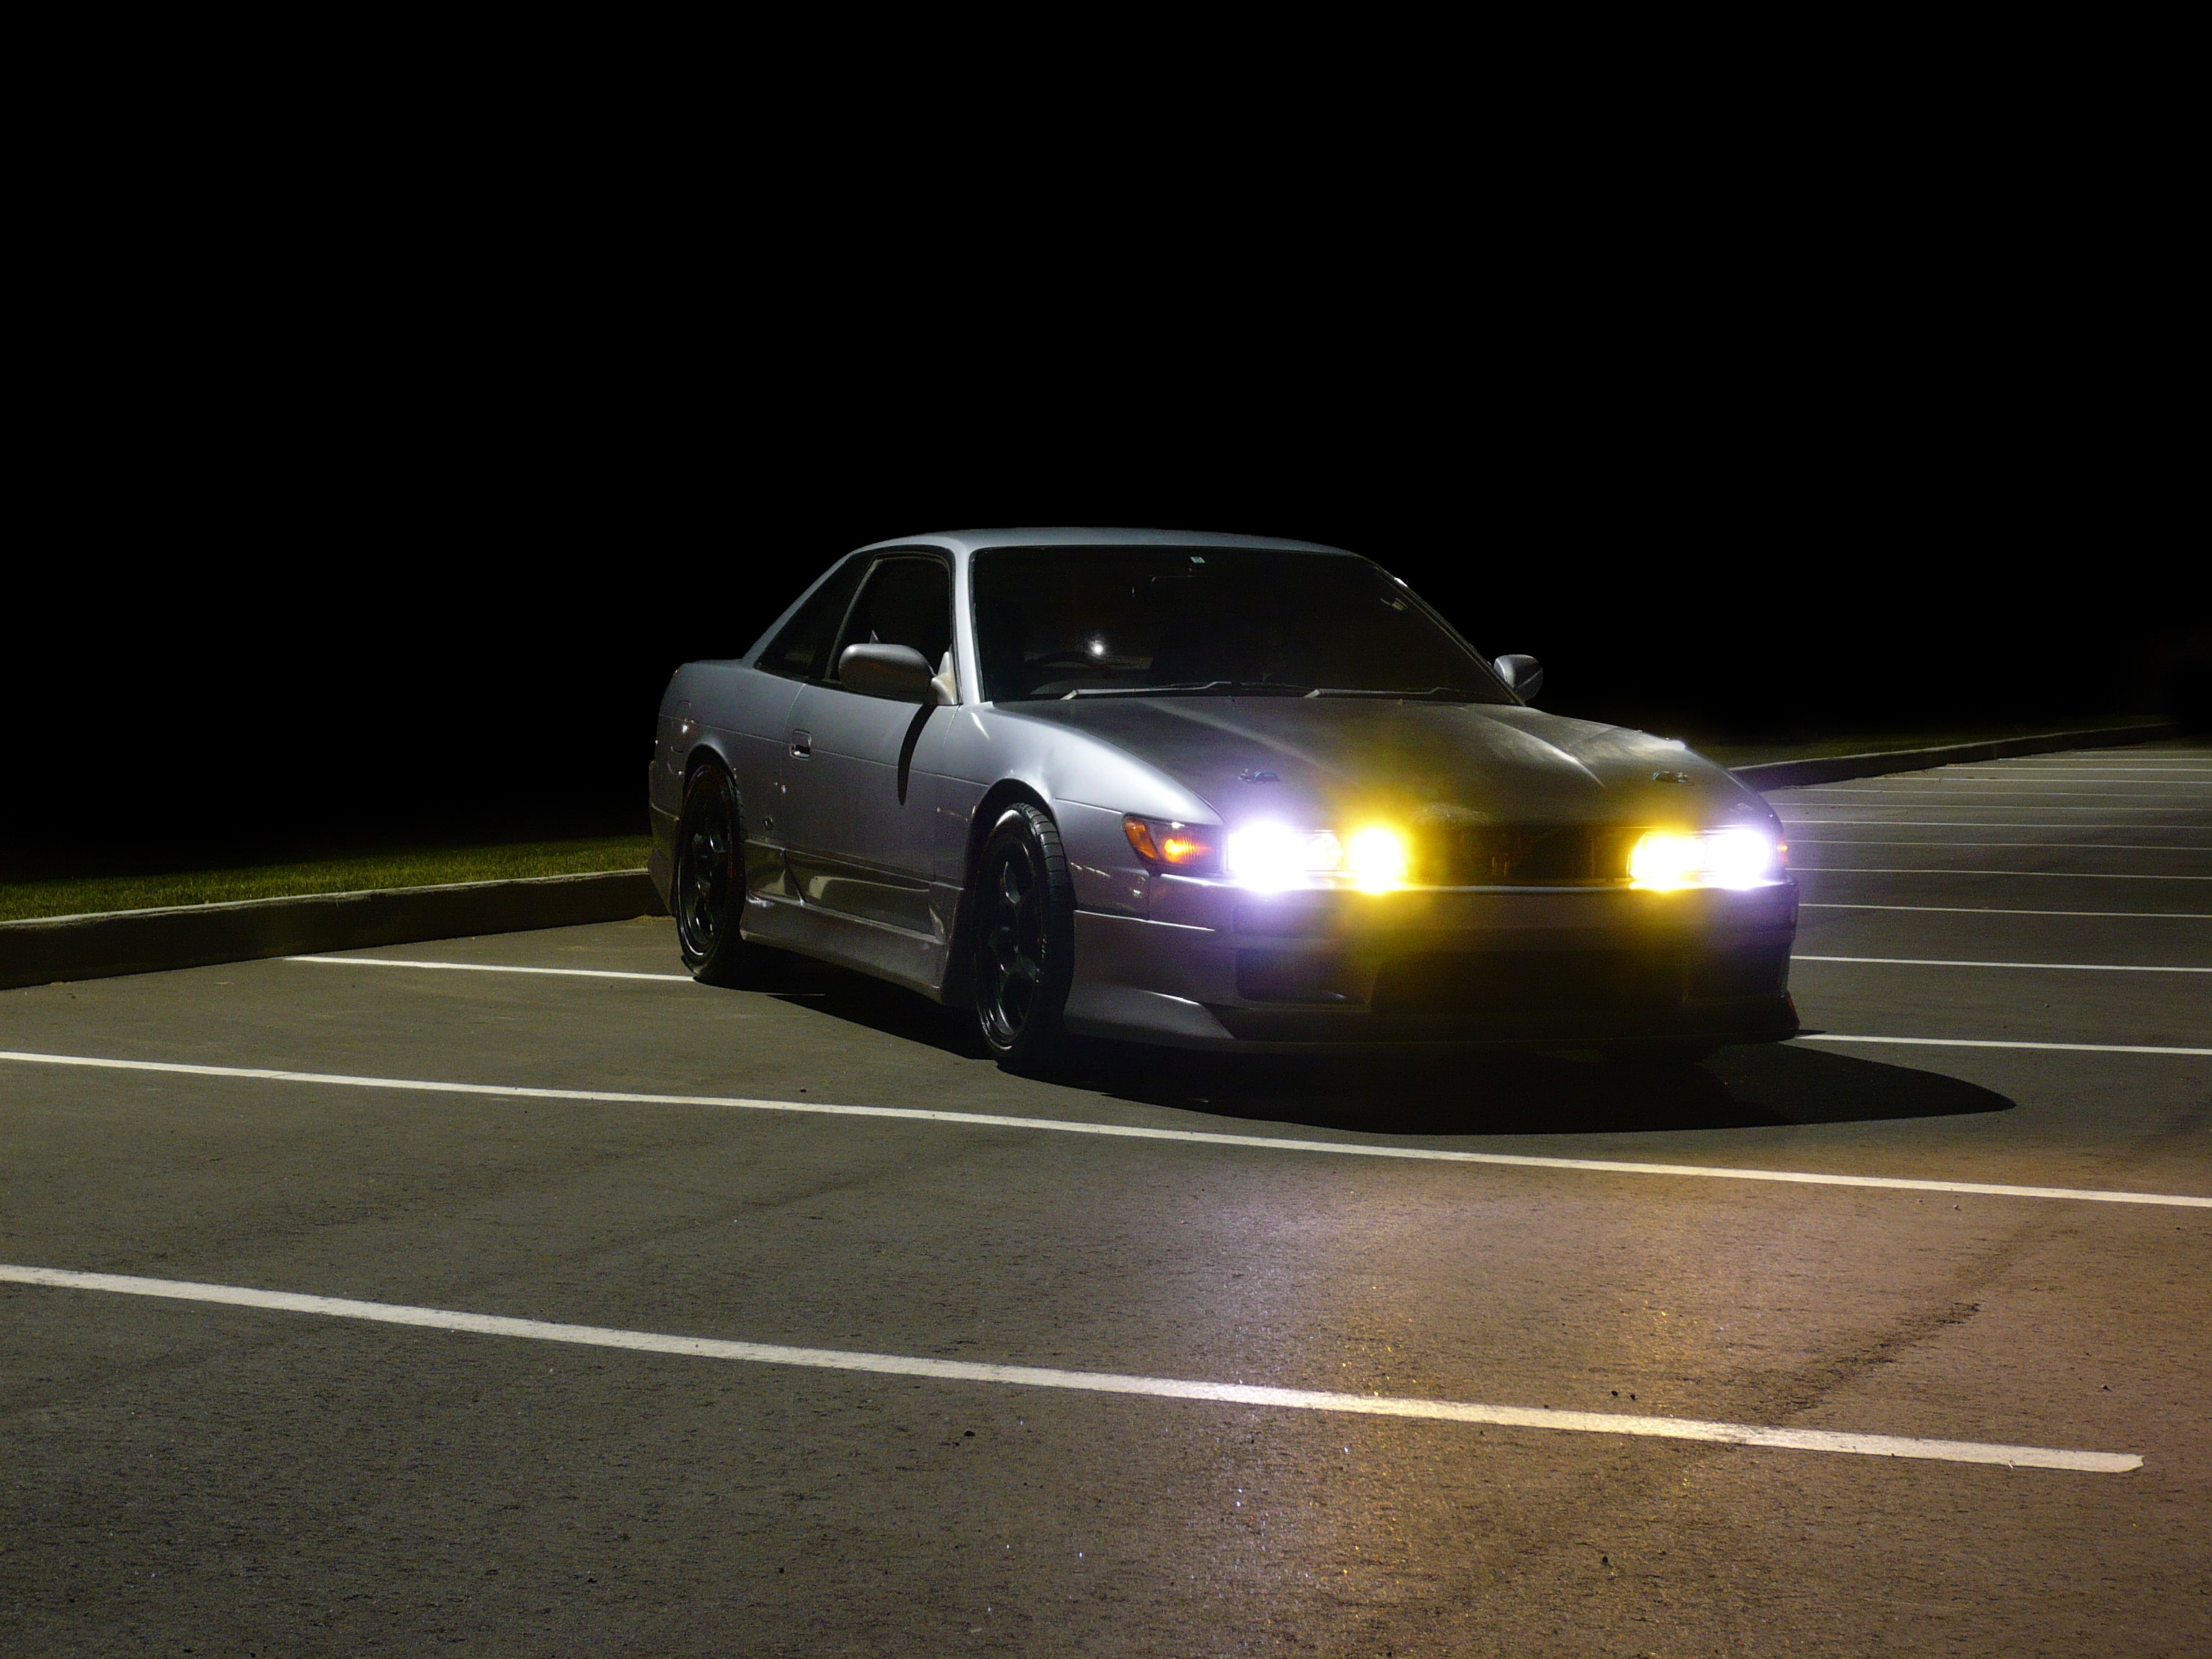 3 14 ночи. Nissan Silvia s13 дрифт ночь. Nissan Silvia s14 ночью. Nissan 180sx ночью. Nissan Silvia 14 ночь.